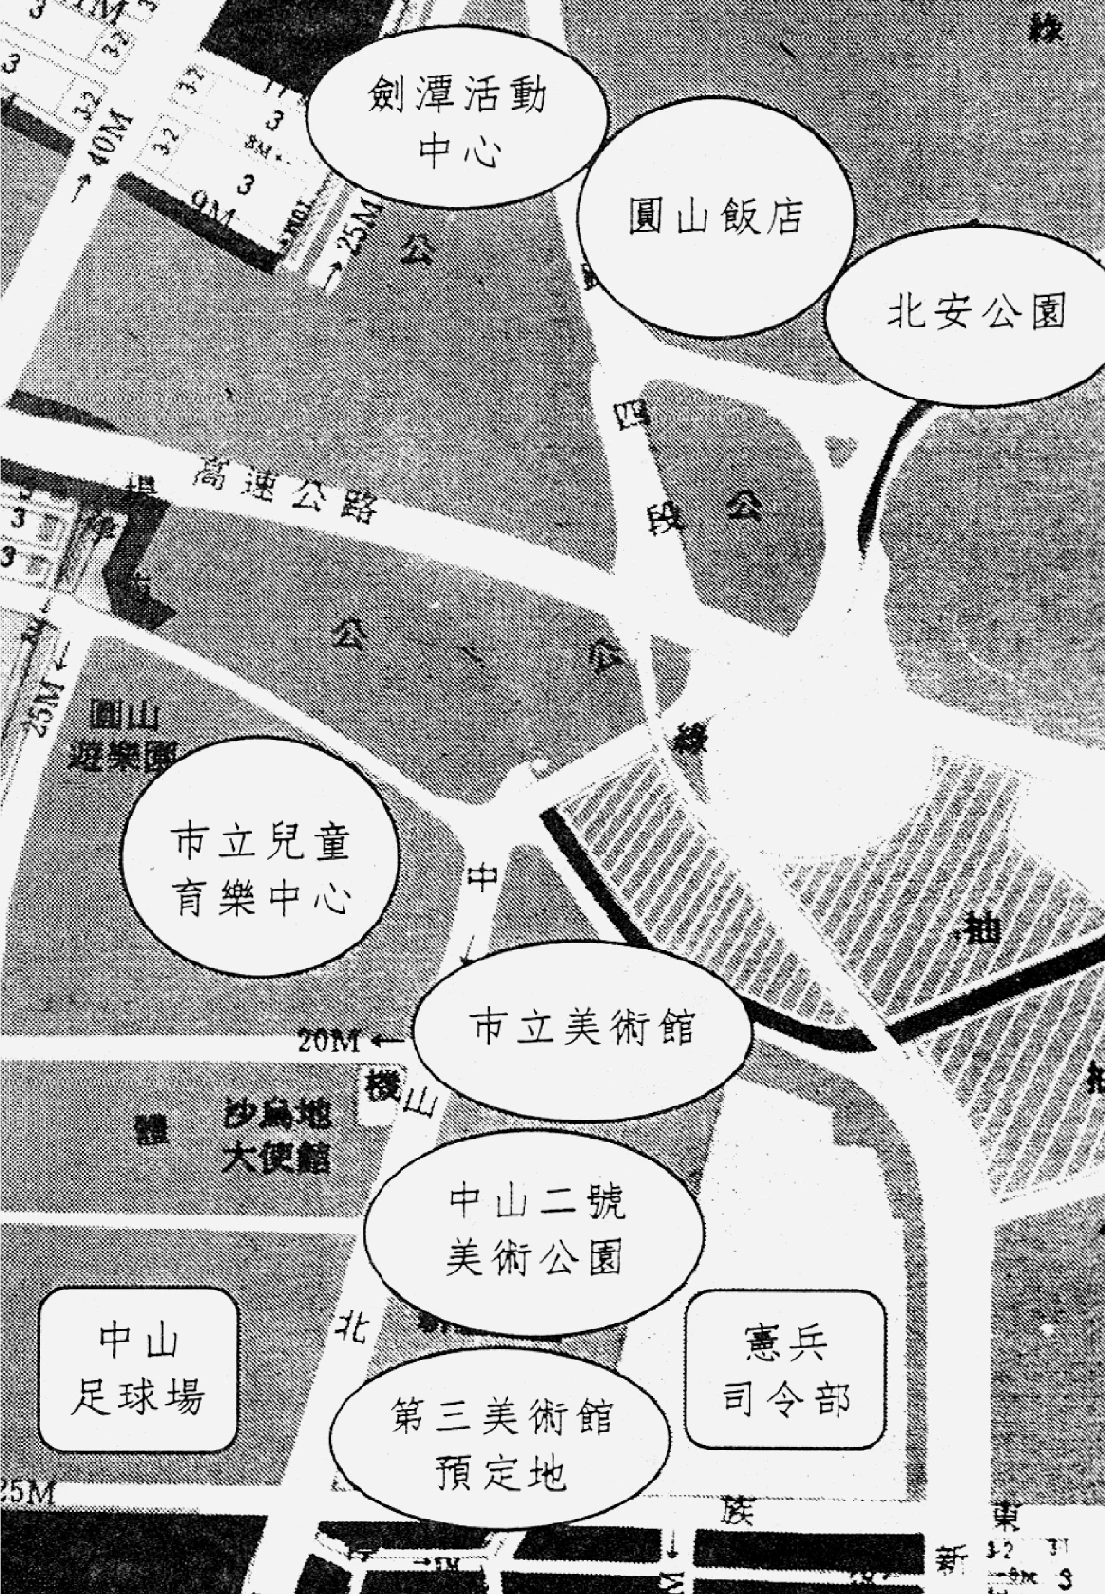 第三美術館的規畫預定地示意。 圖片來源：《台北市第三美術館建築功能與空間配置研究》，頁 33-圖片